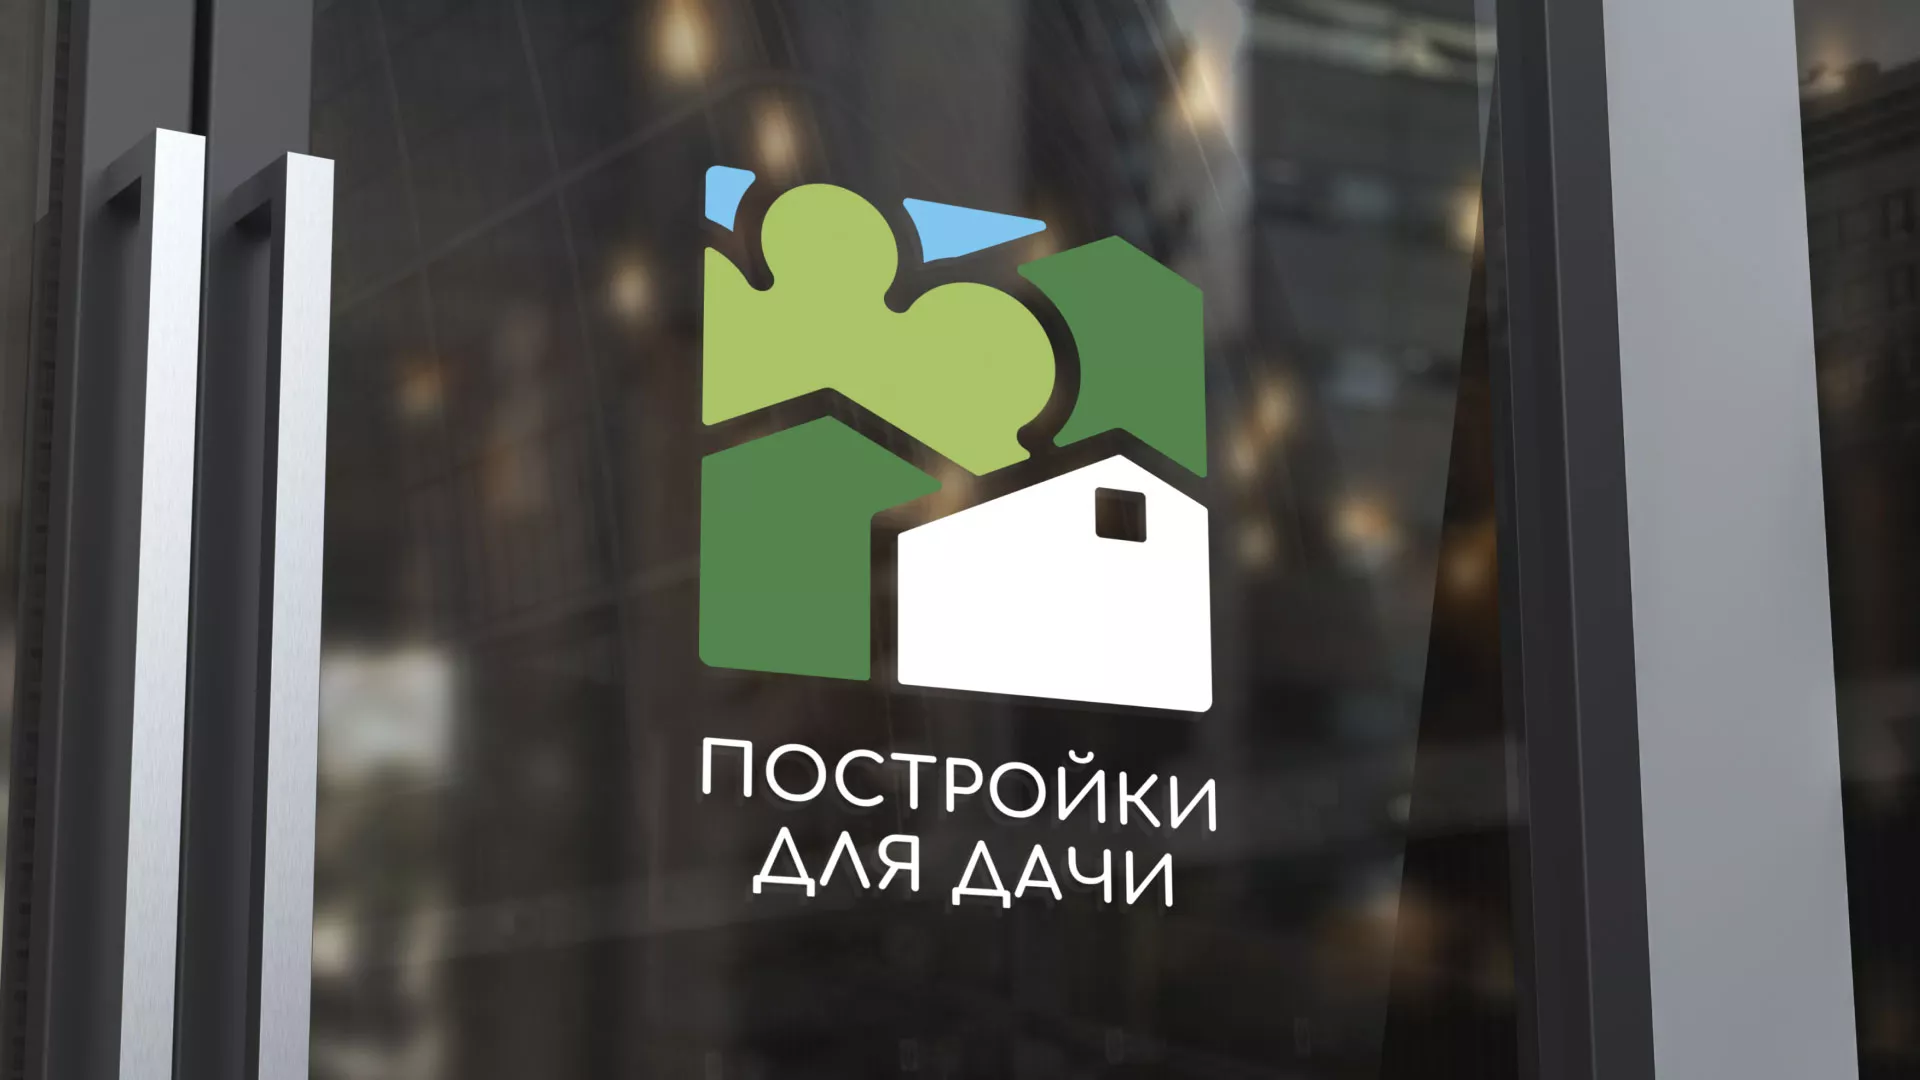 Разработка логотипа в Усолье для компании «Постройки для дачи»